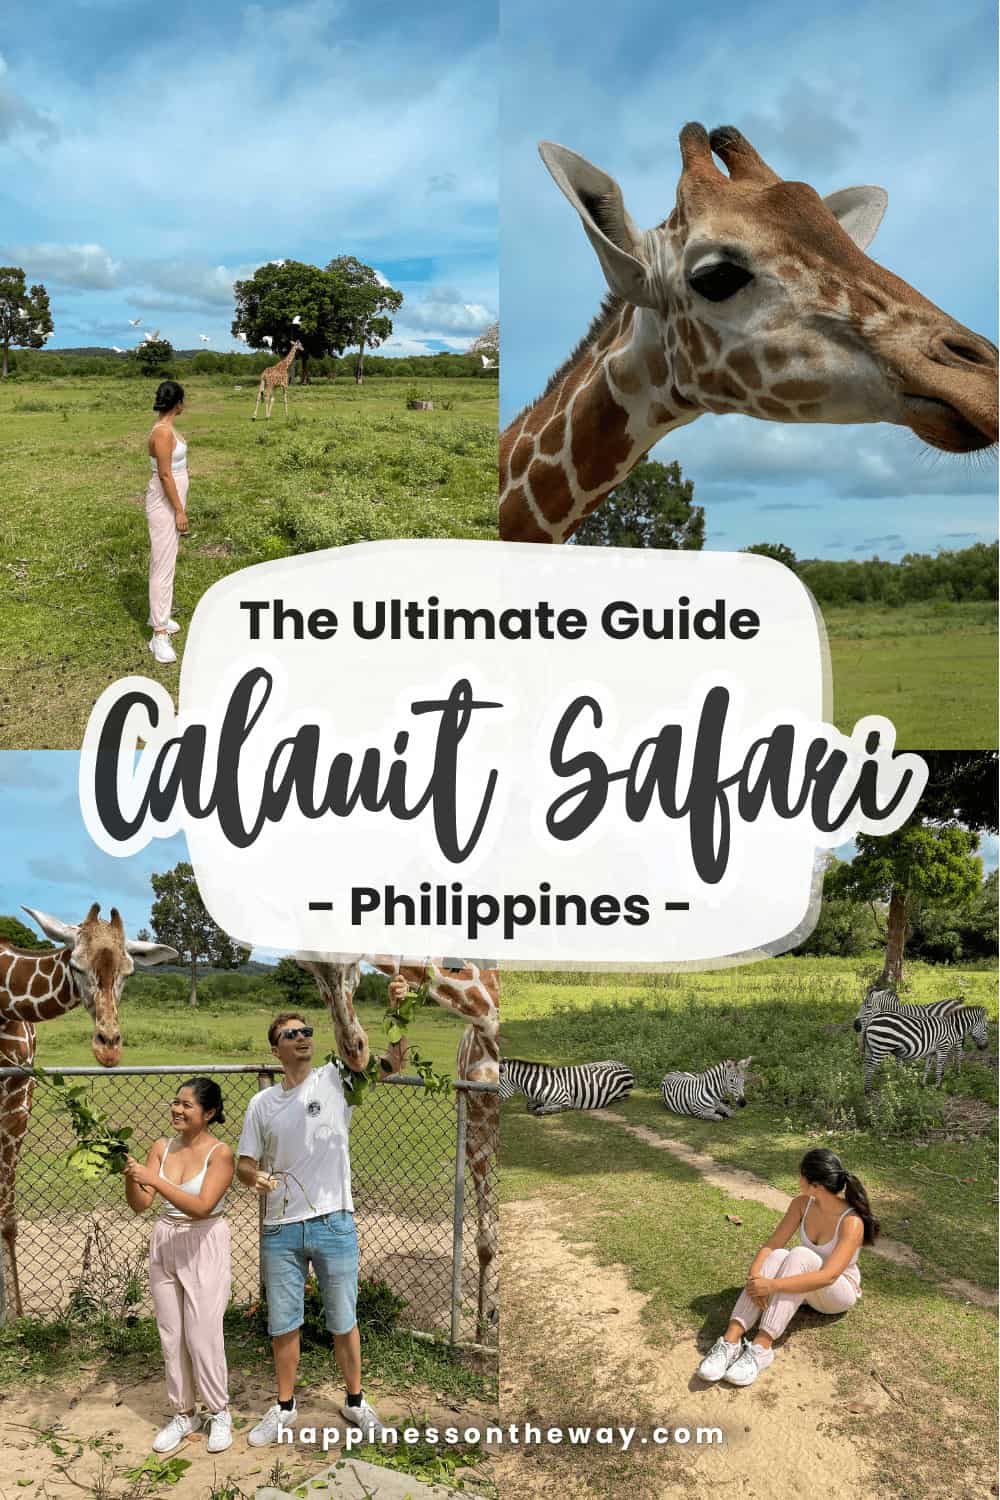 Calauit Safari Park Guide